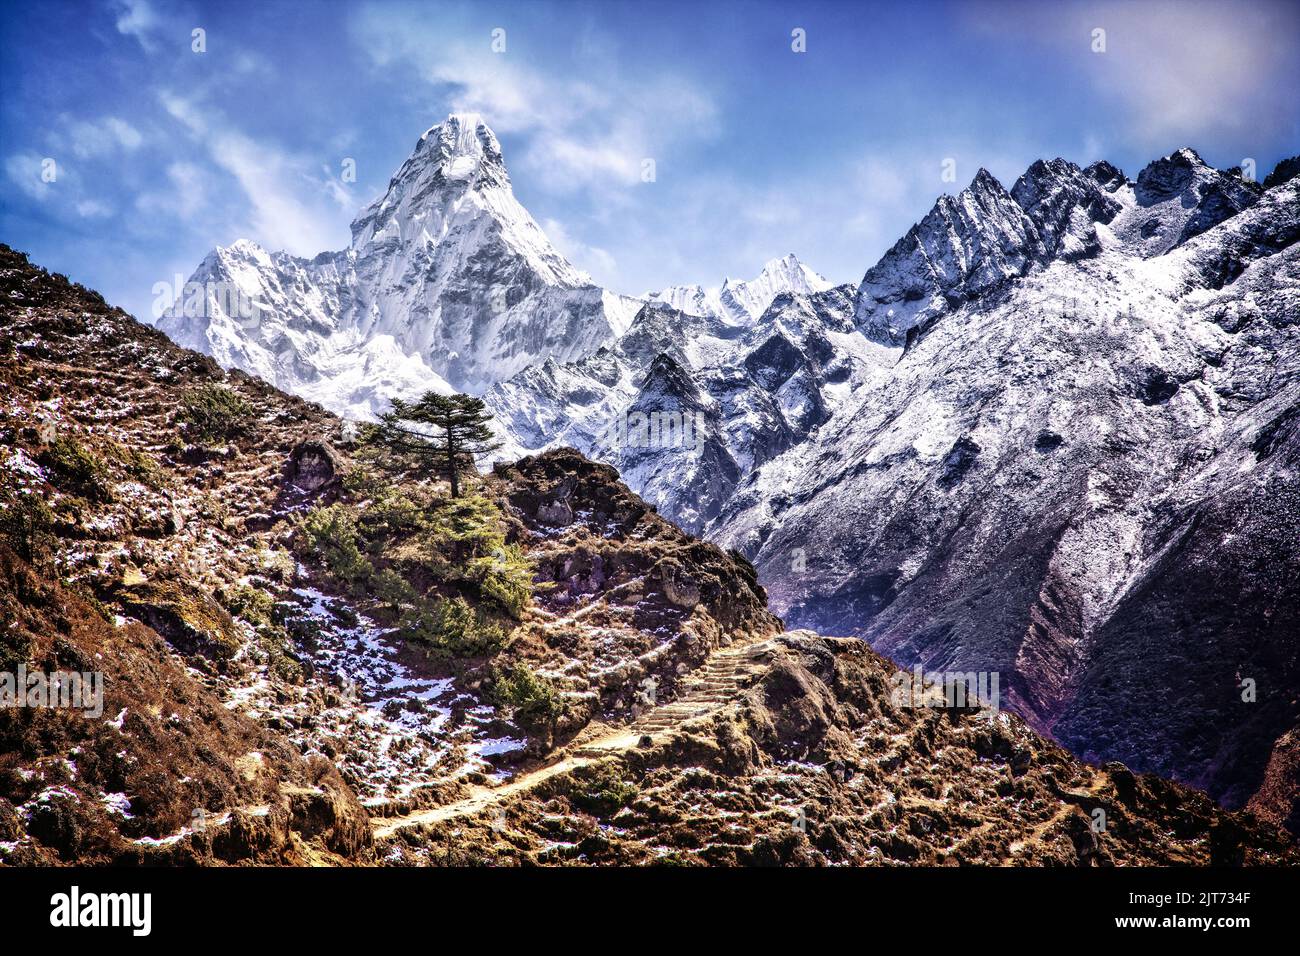 AMA Dablam (6856 mètres) domine la ligne d'horizon le long de la piste vers la haute Himalaya. Parc national de Sagarmatha, Népal. Banque D'Images